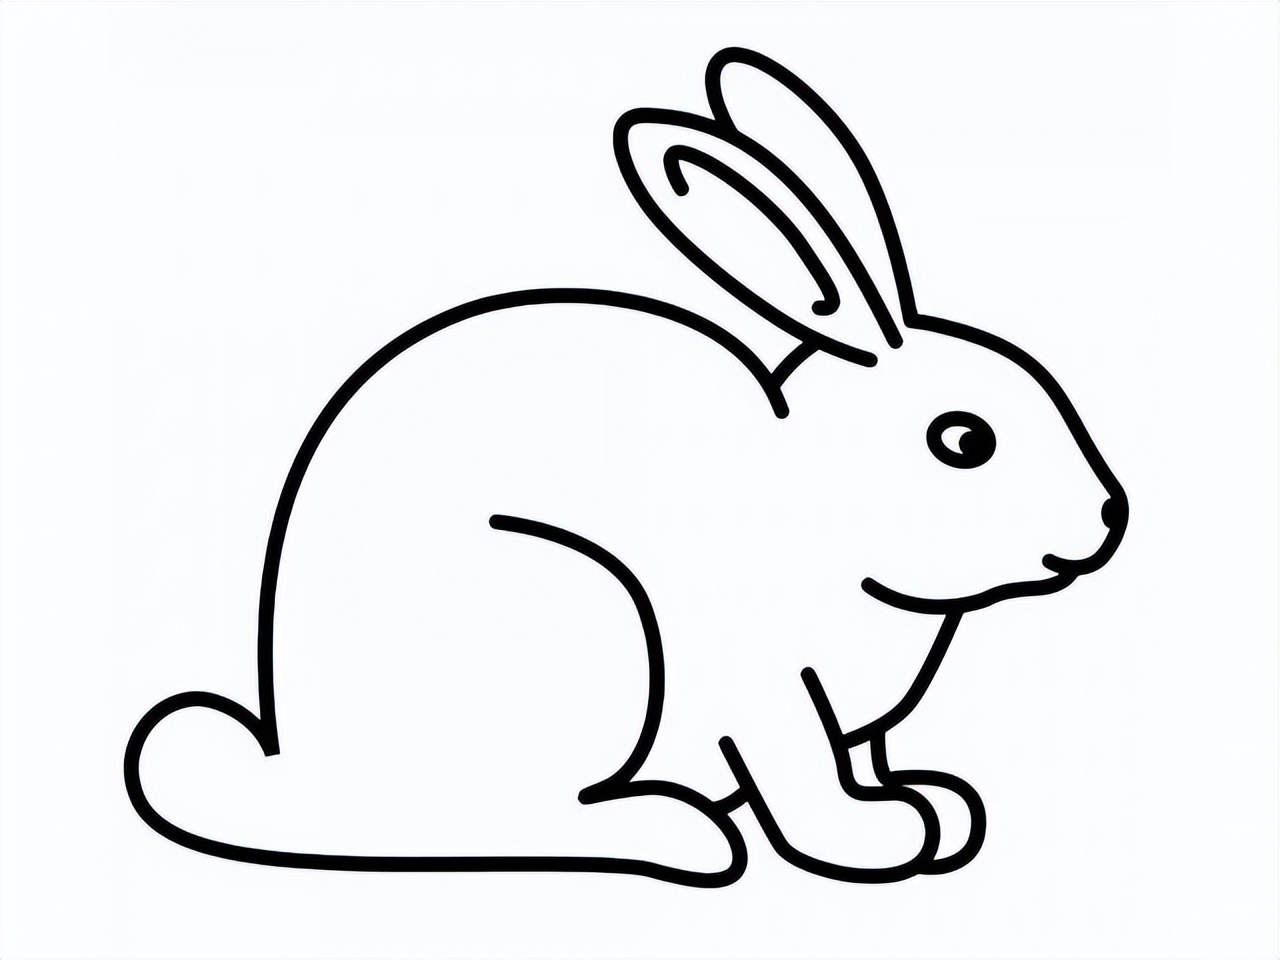 简笔兔子 简单图片